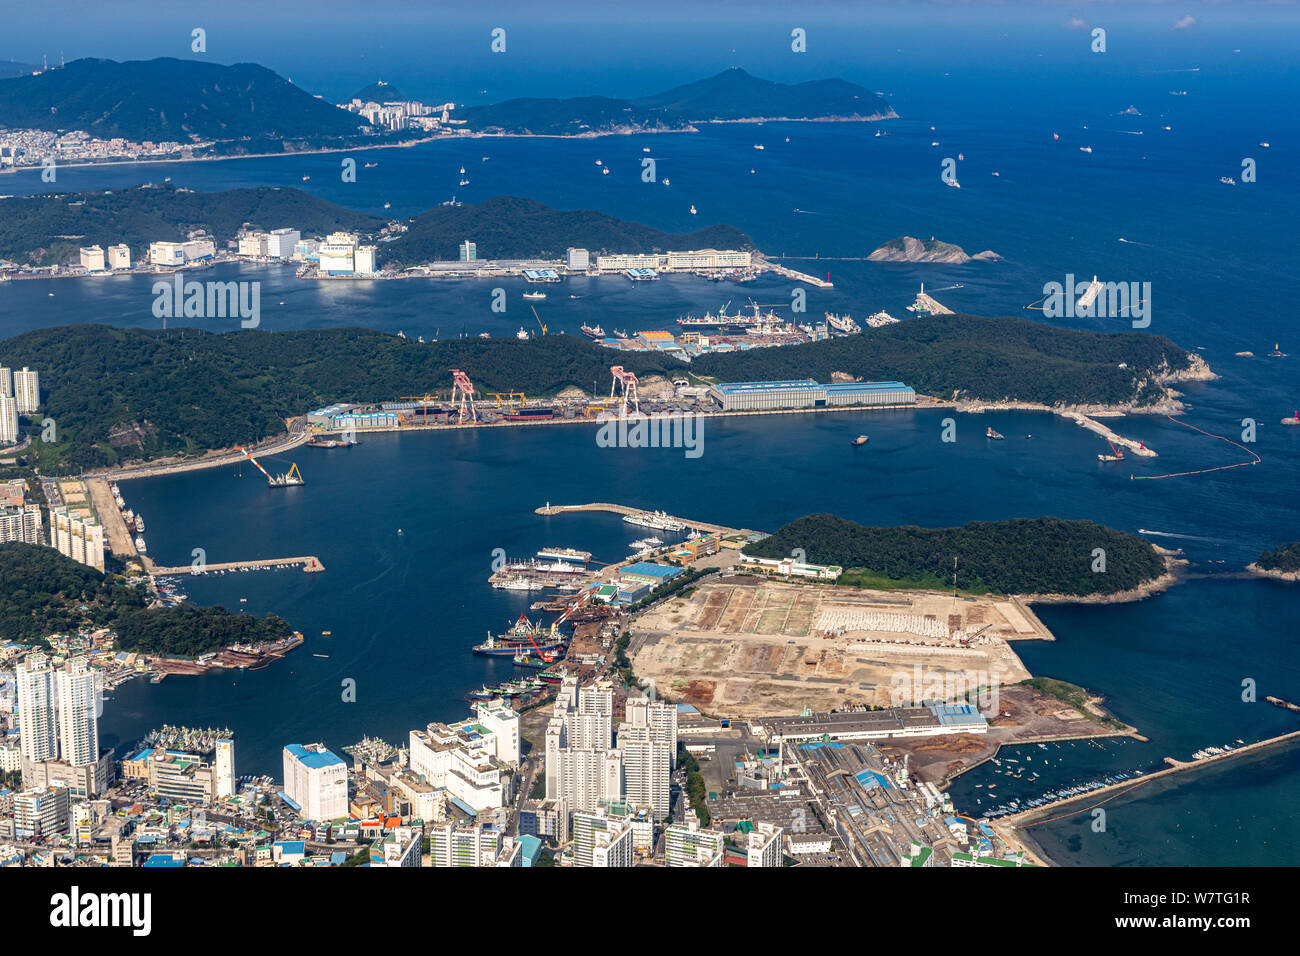 Busan, Korea - June 22, 2019: Aerial view of Busan Metropolitan City Stock Photo